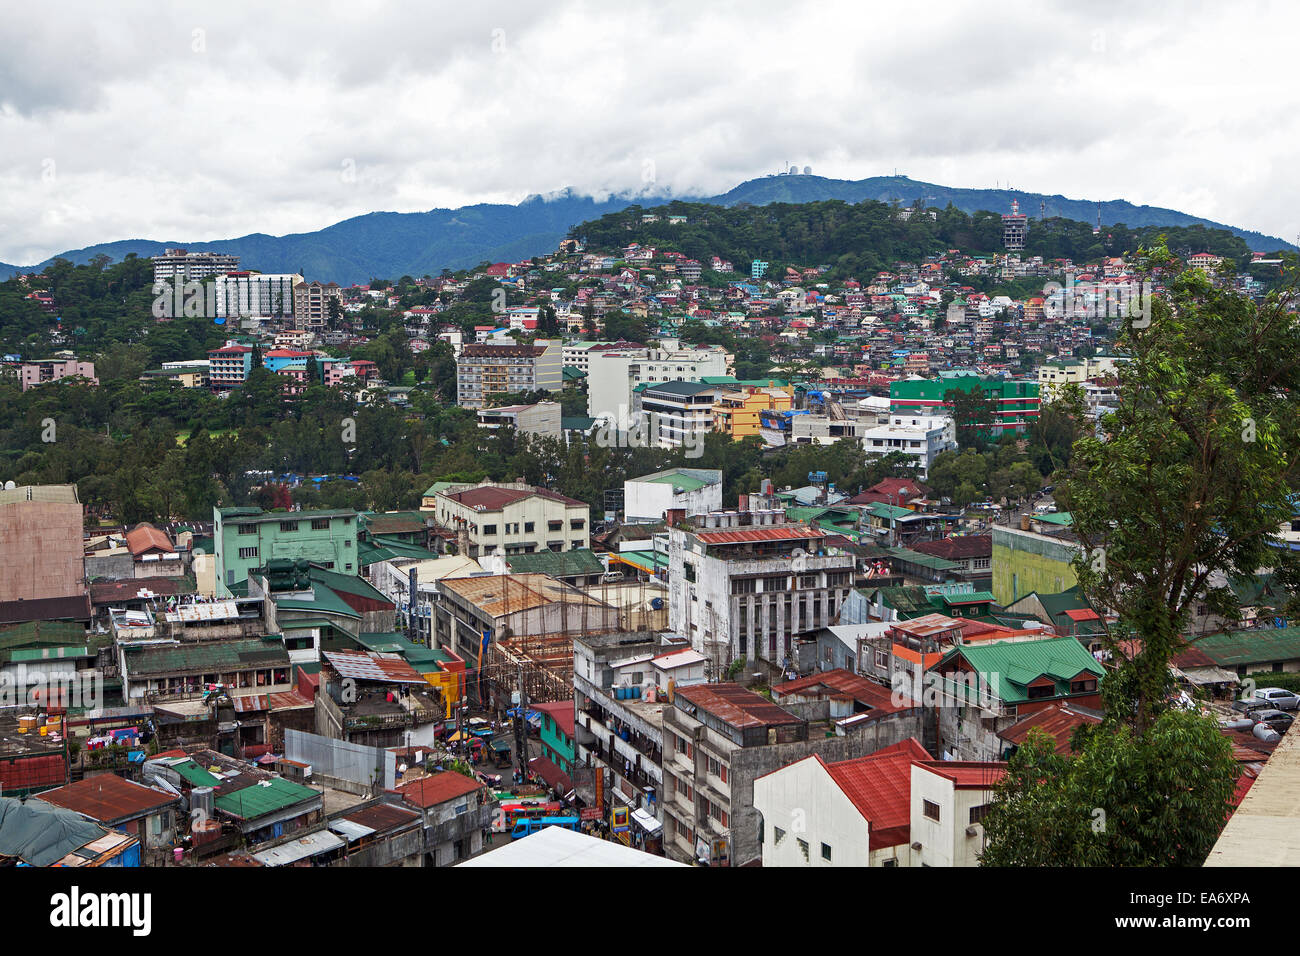 Überbevölkerten Lebensbedingungen in Baguio City, Philippinen. Kommerzielle Gebäude und Häuser konkurrieren um Raum. Stockfoto